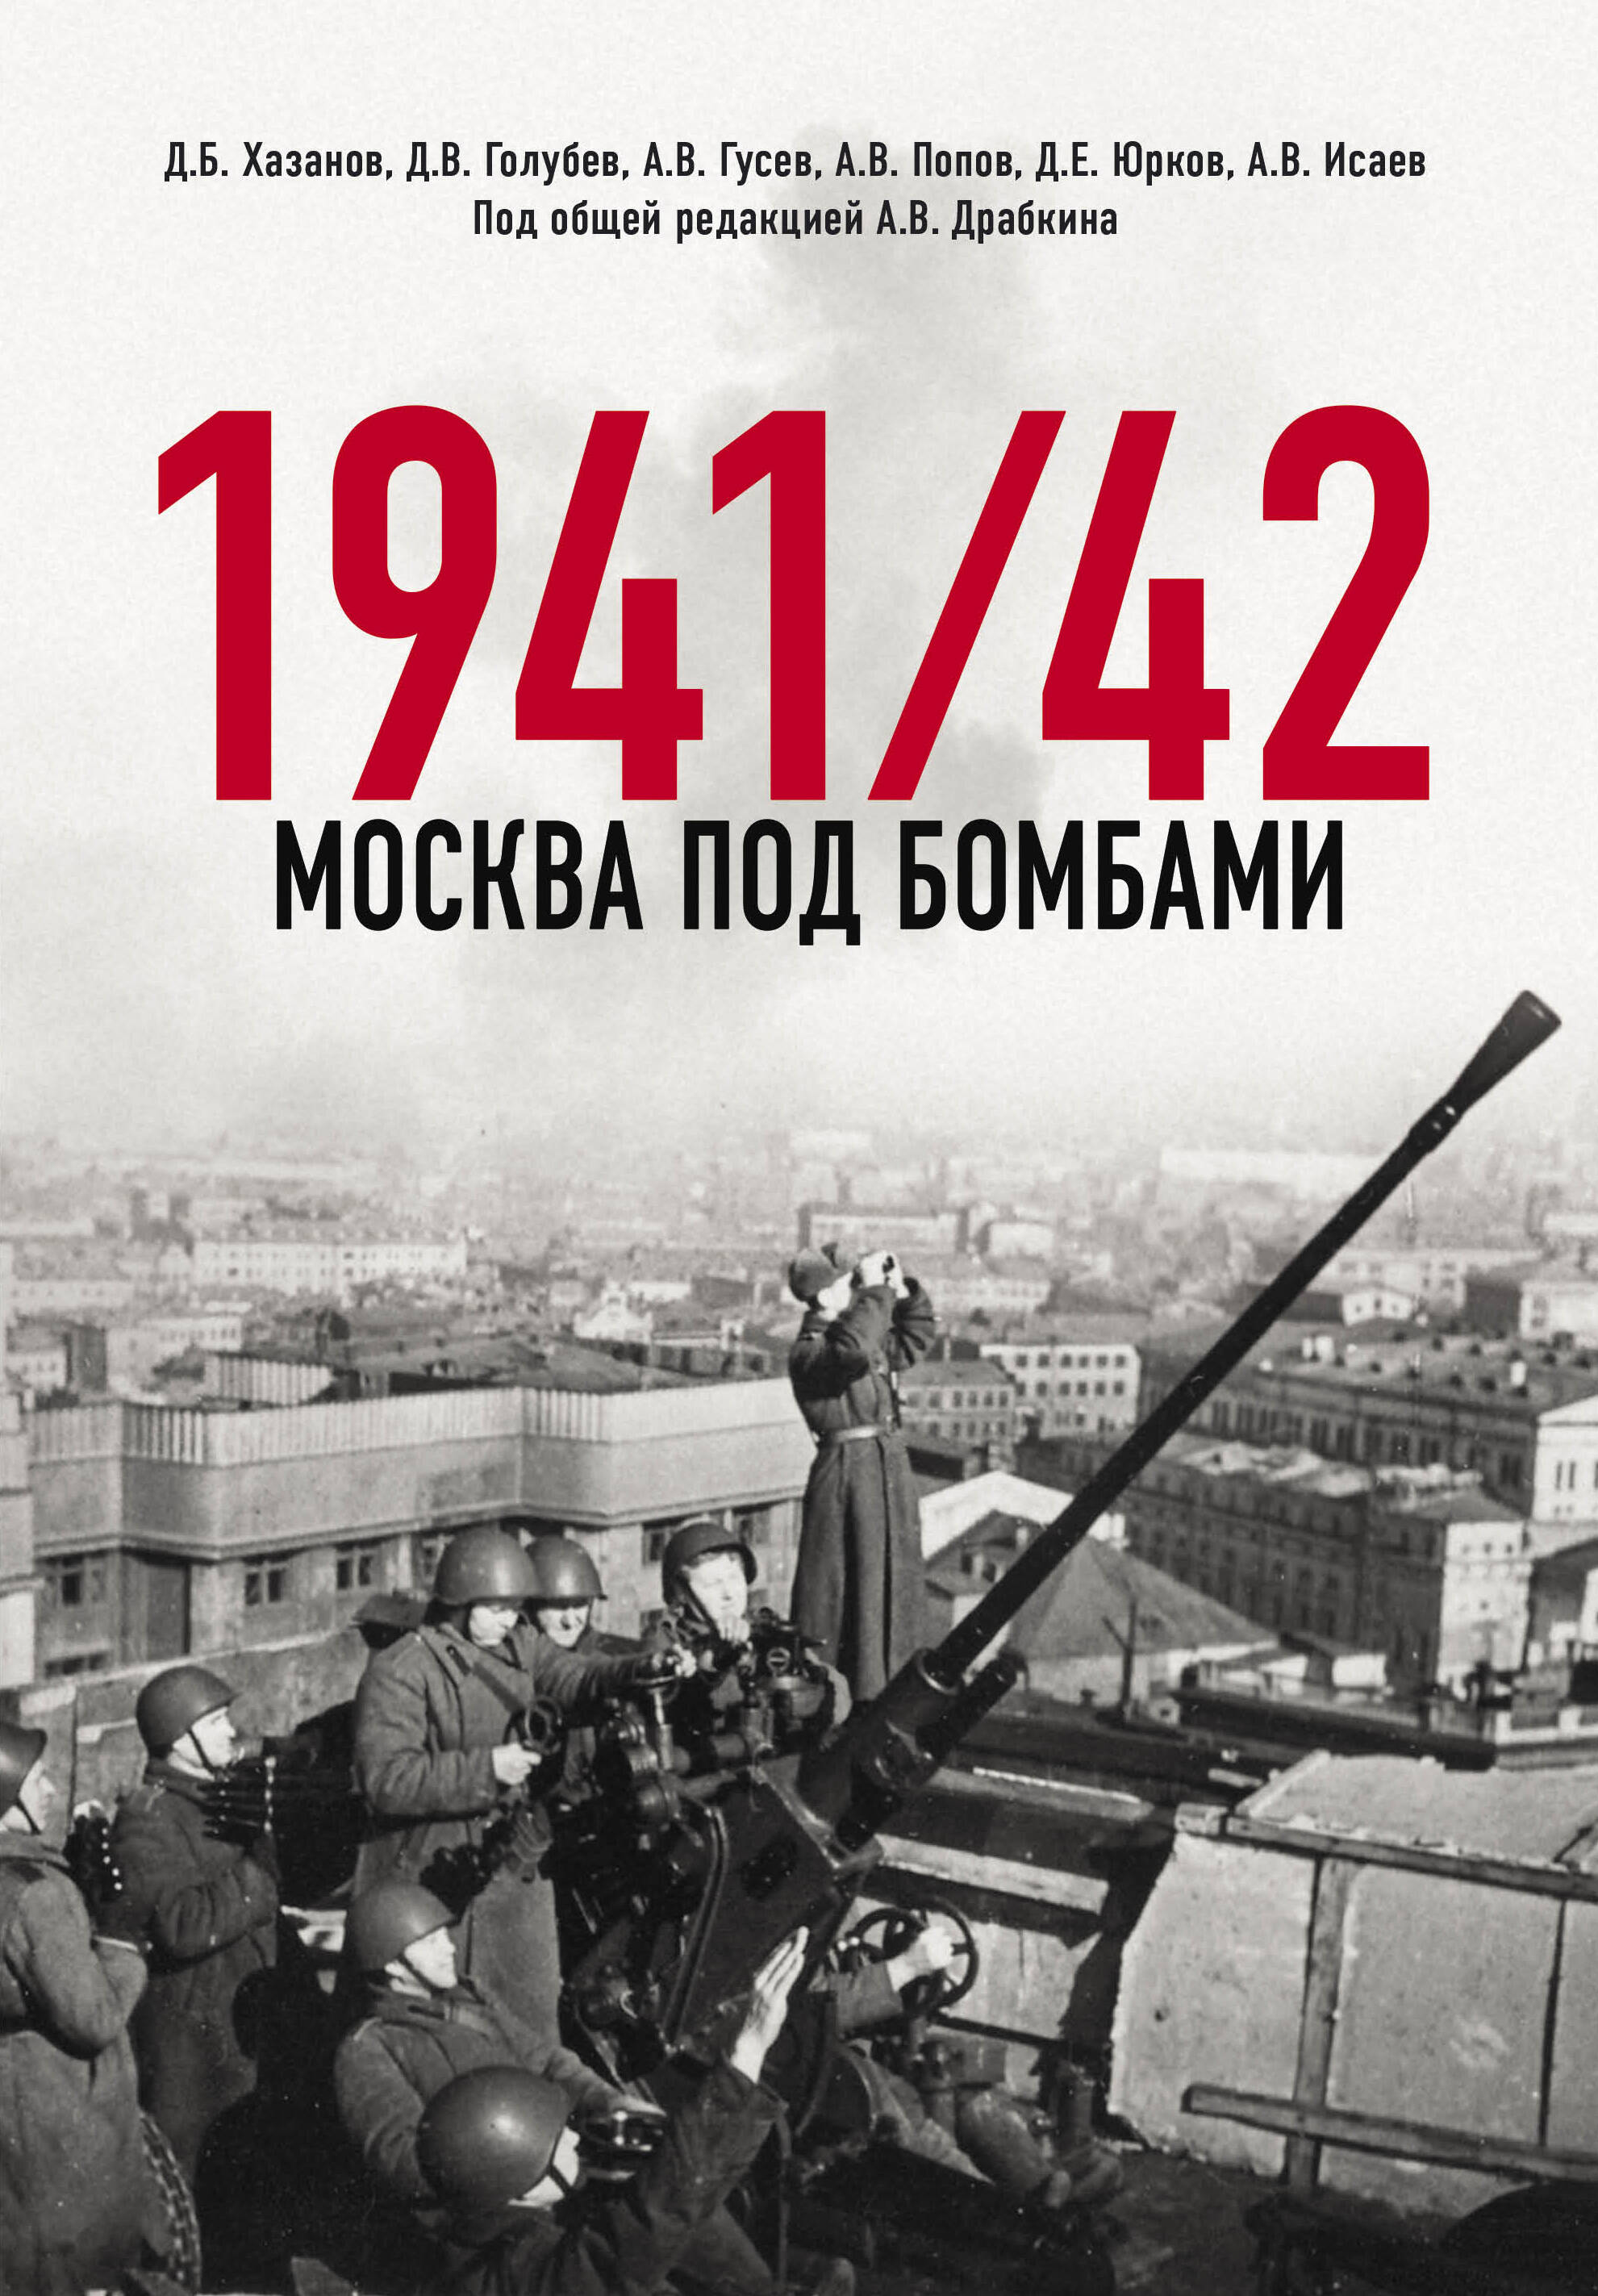  книга Москва под бомбами 1941/42